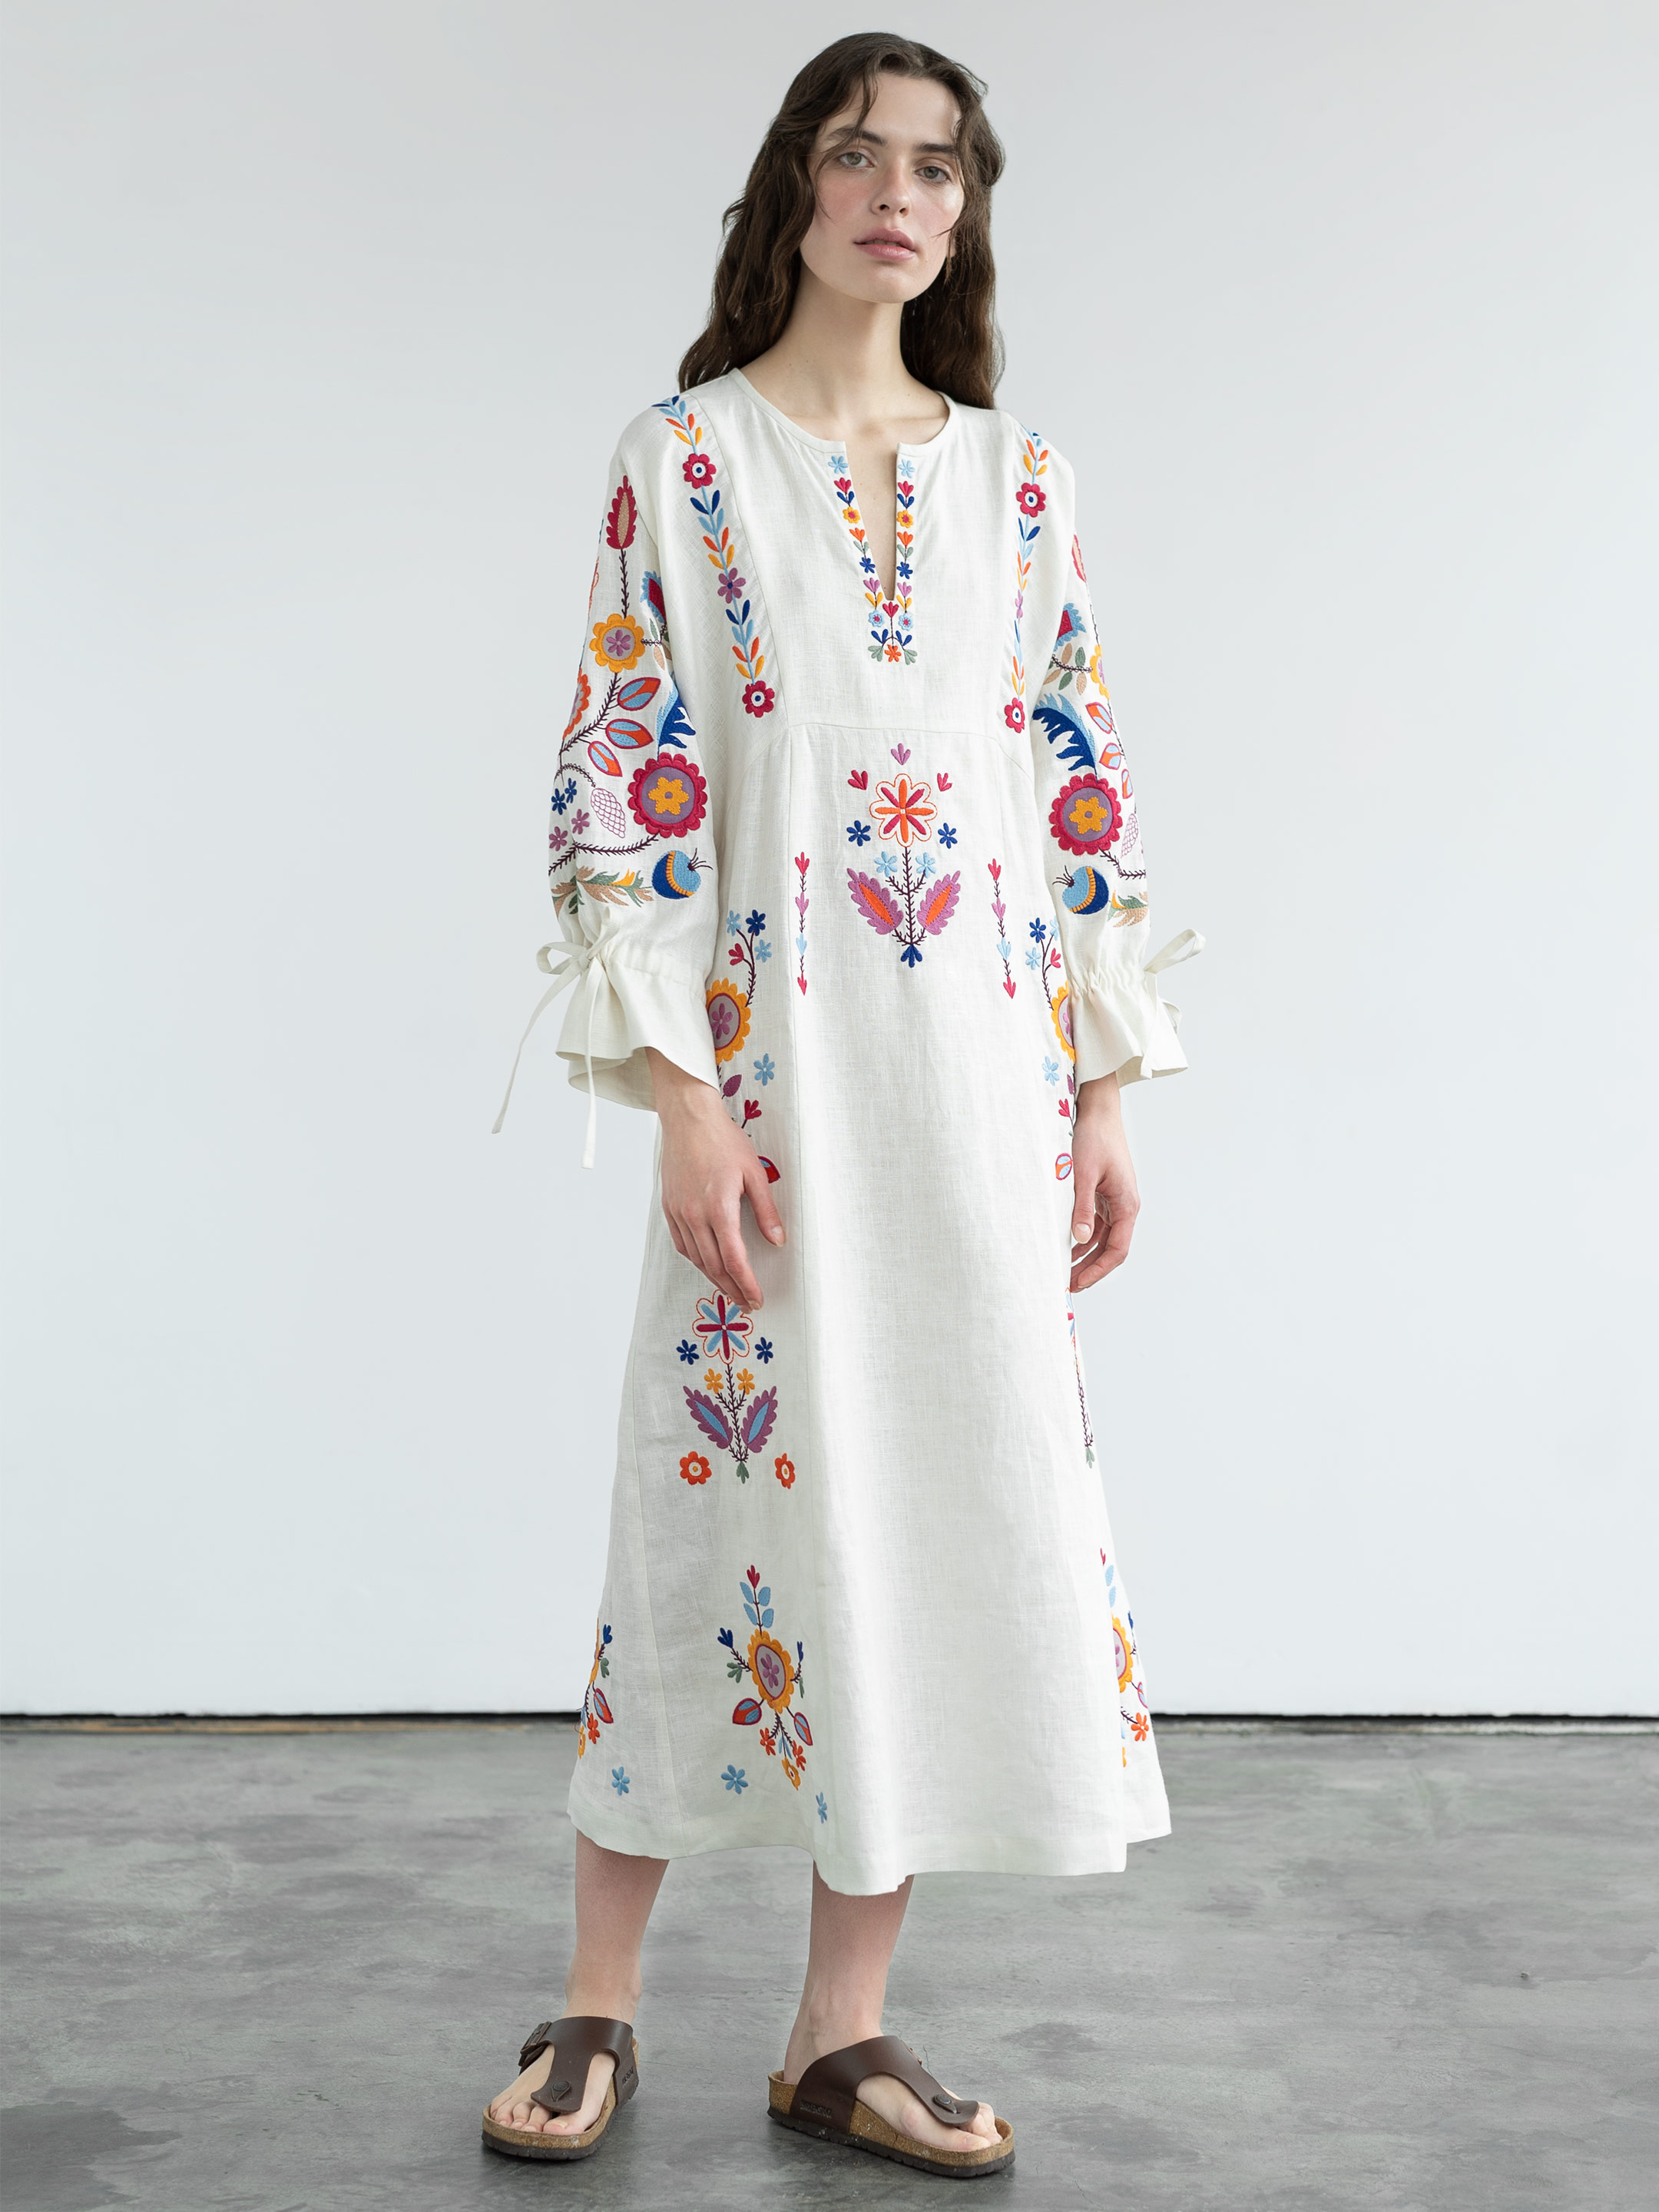 Біла лляна сукня з рослинним орнаментом Sobachko - фото 1